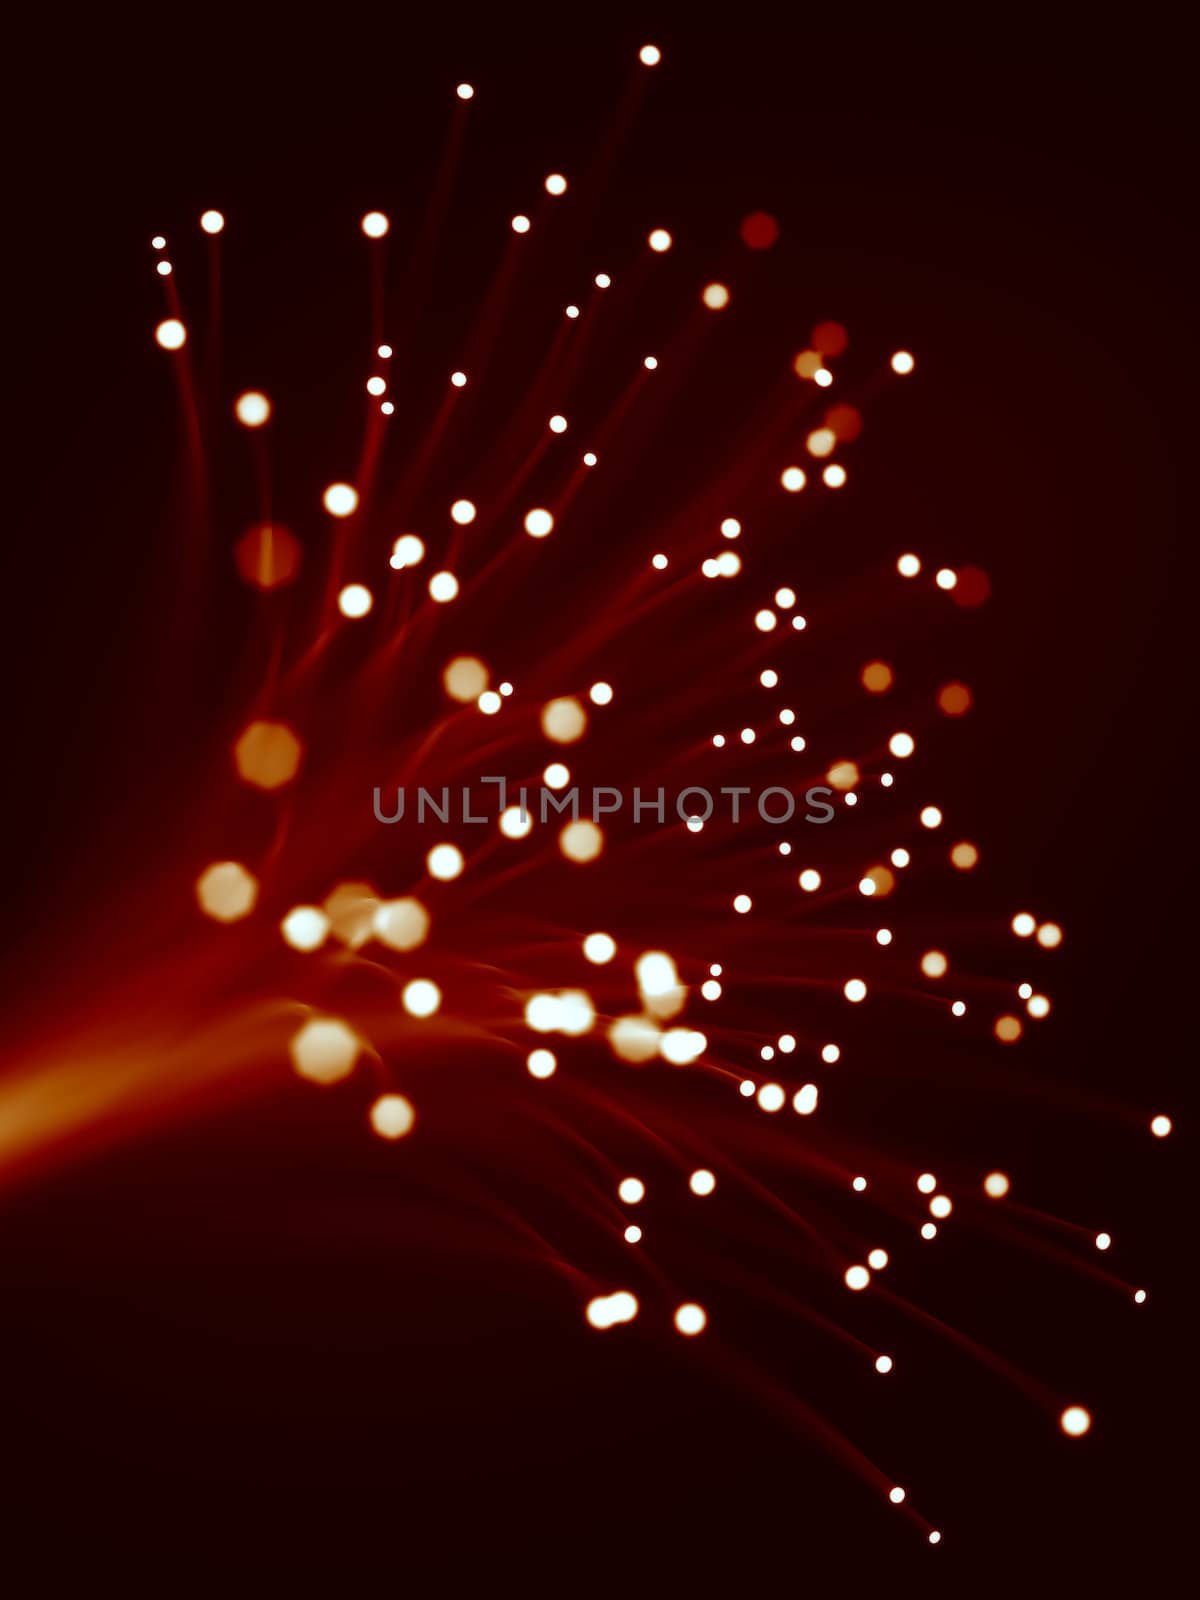 3d rendering of red optic fibers